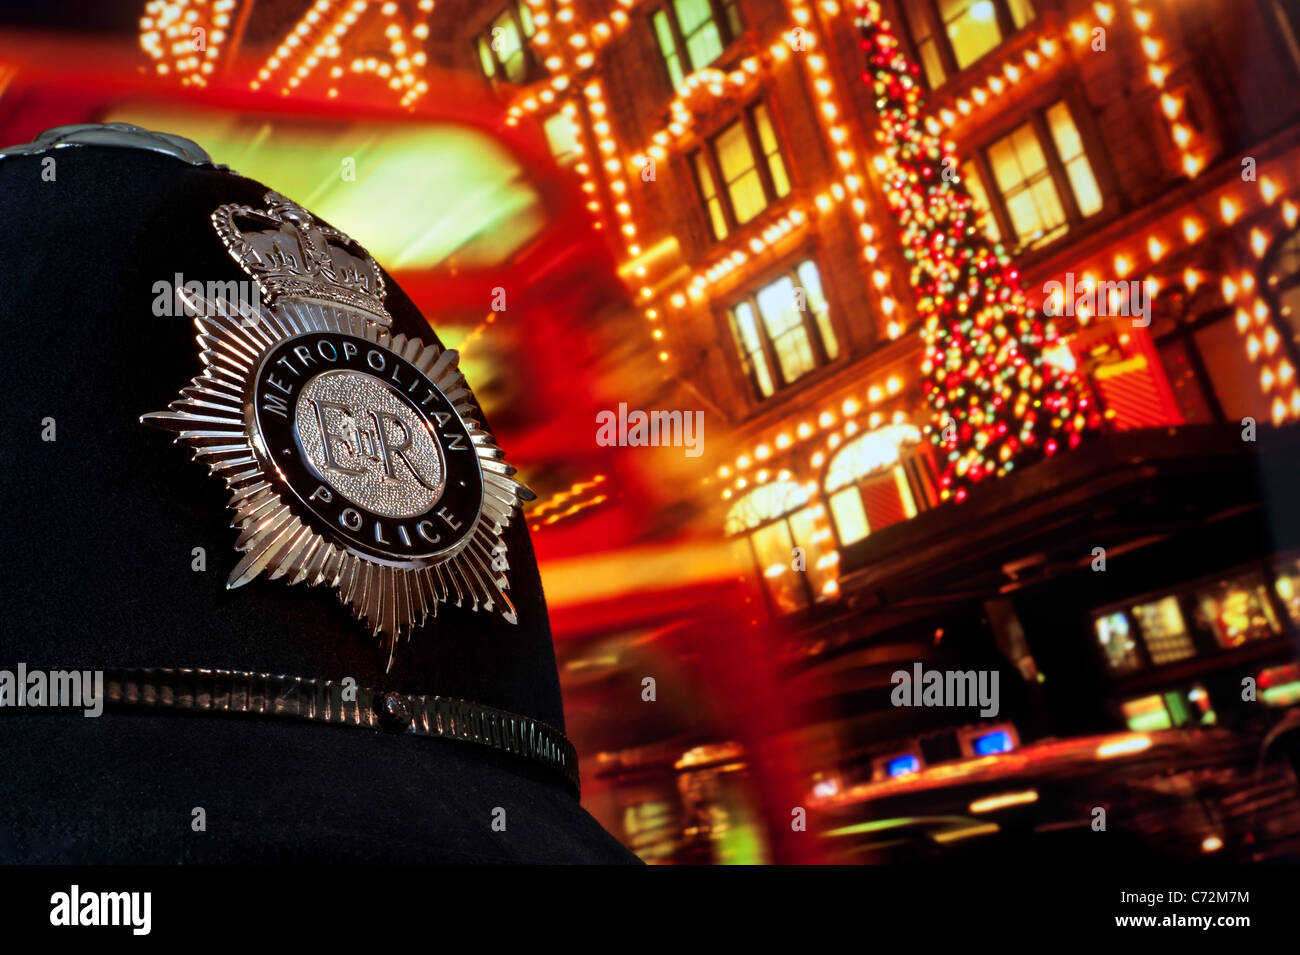 Londoner Polizei KRIMINALITÄT WEIHNACHTEN BREATHALIZER STRASSE Metropolitan Police Helm mit Weihnachtsbaum und Lichter Harrods Knightsbridge London UK Stockfoto